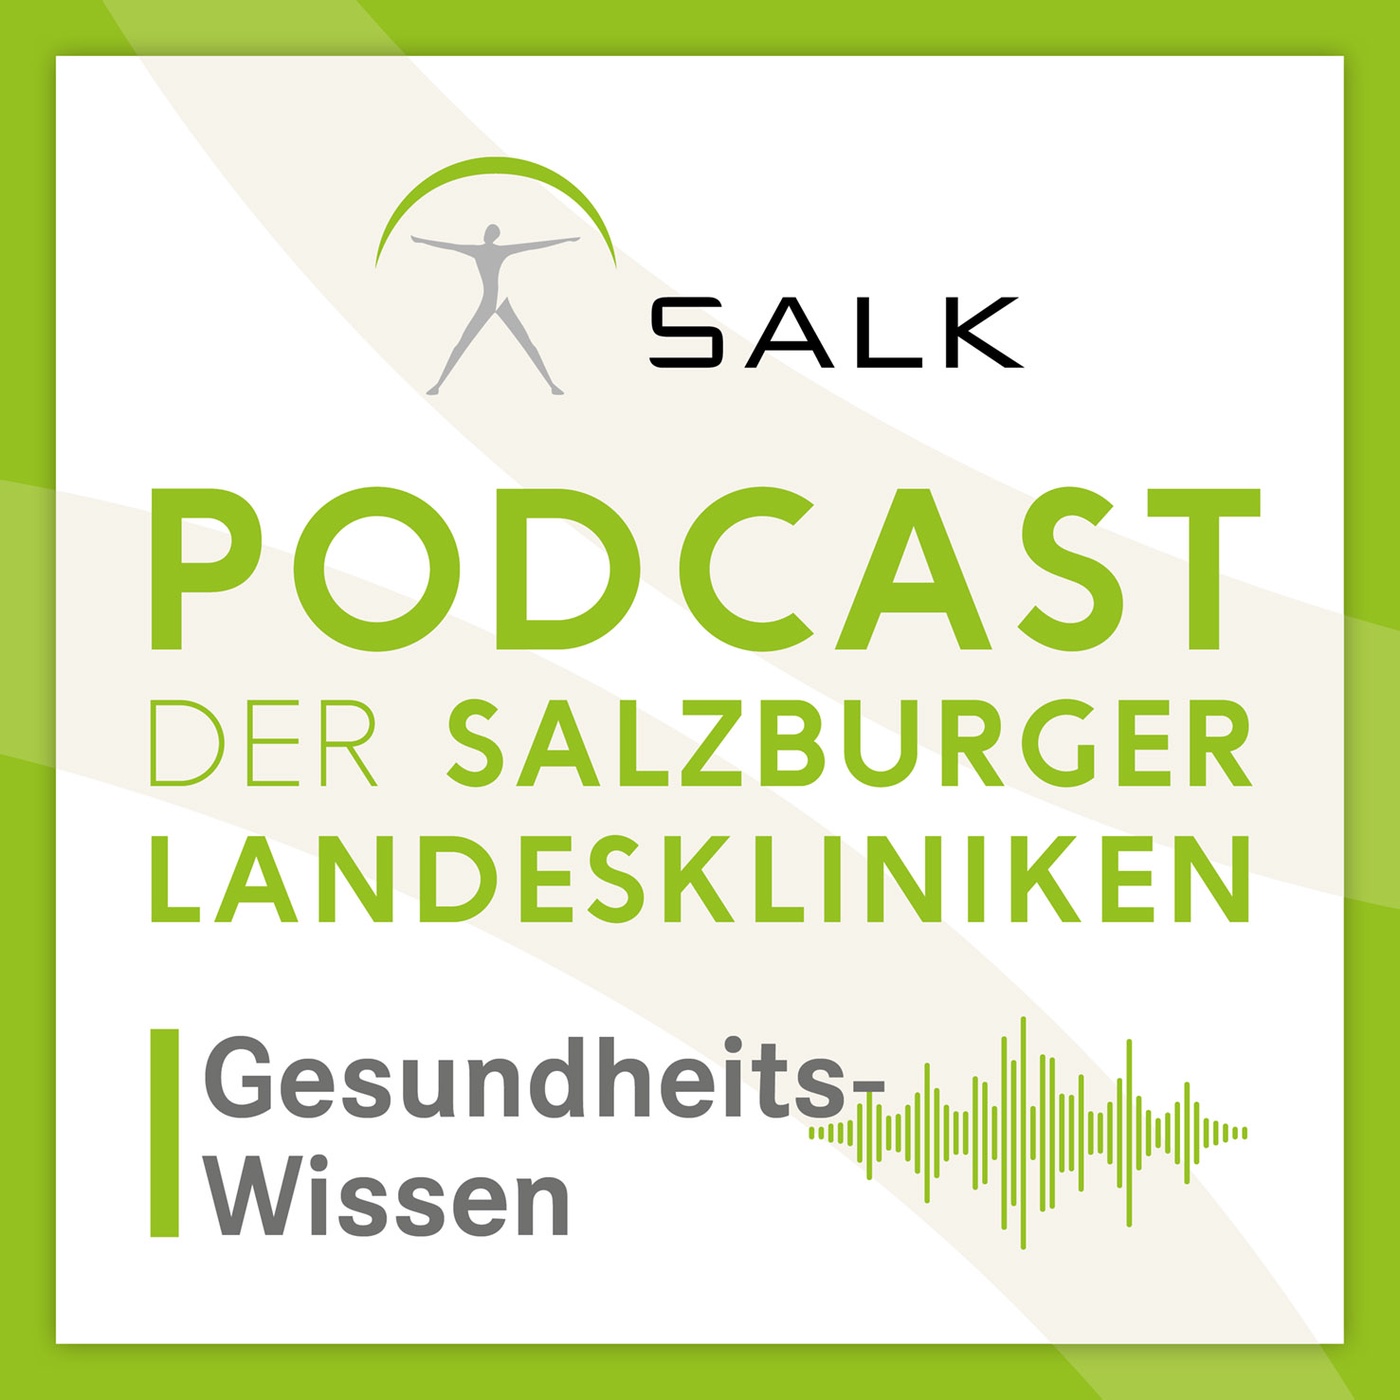 Podcast der Salzburger Landeskliniken: Gesundheits-Wissen